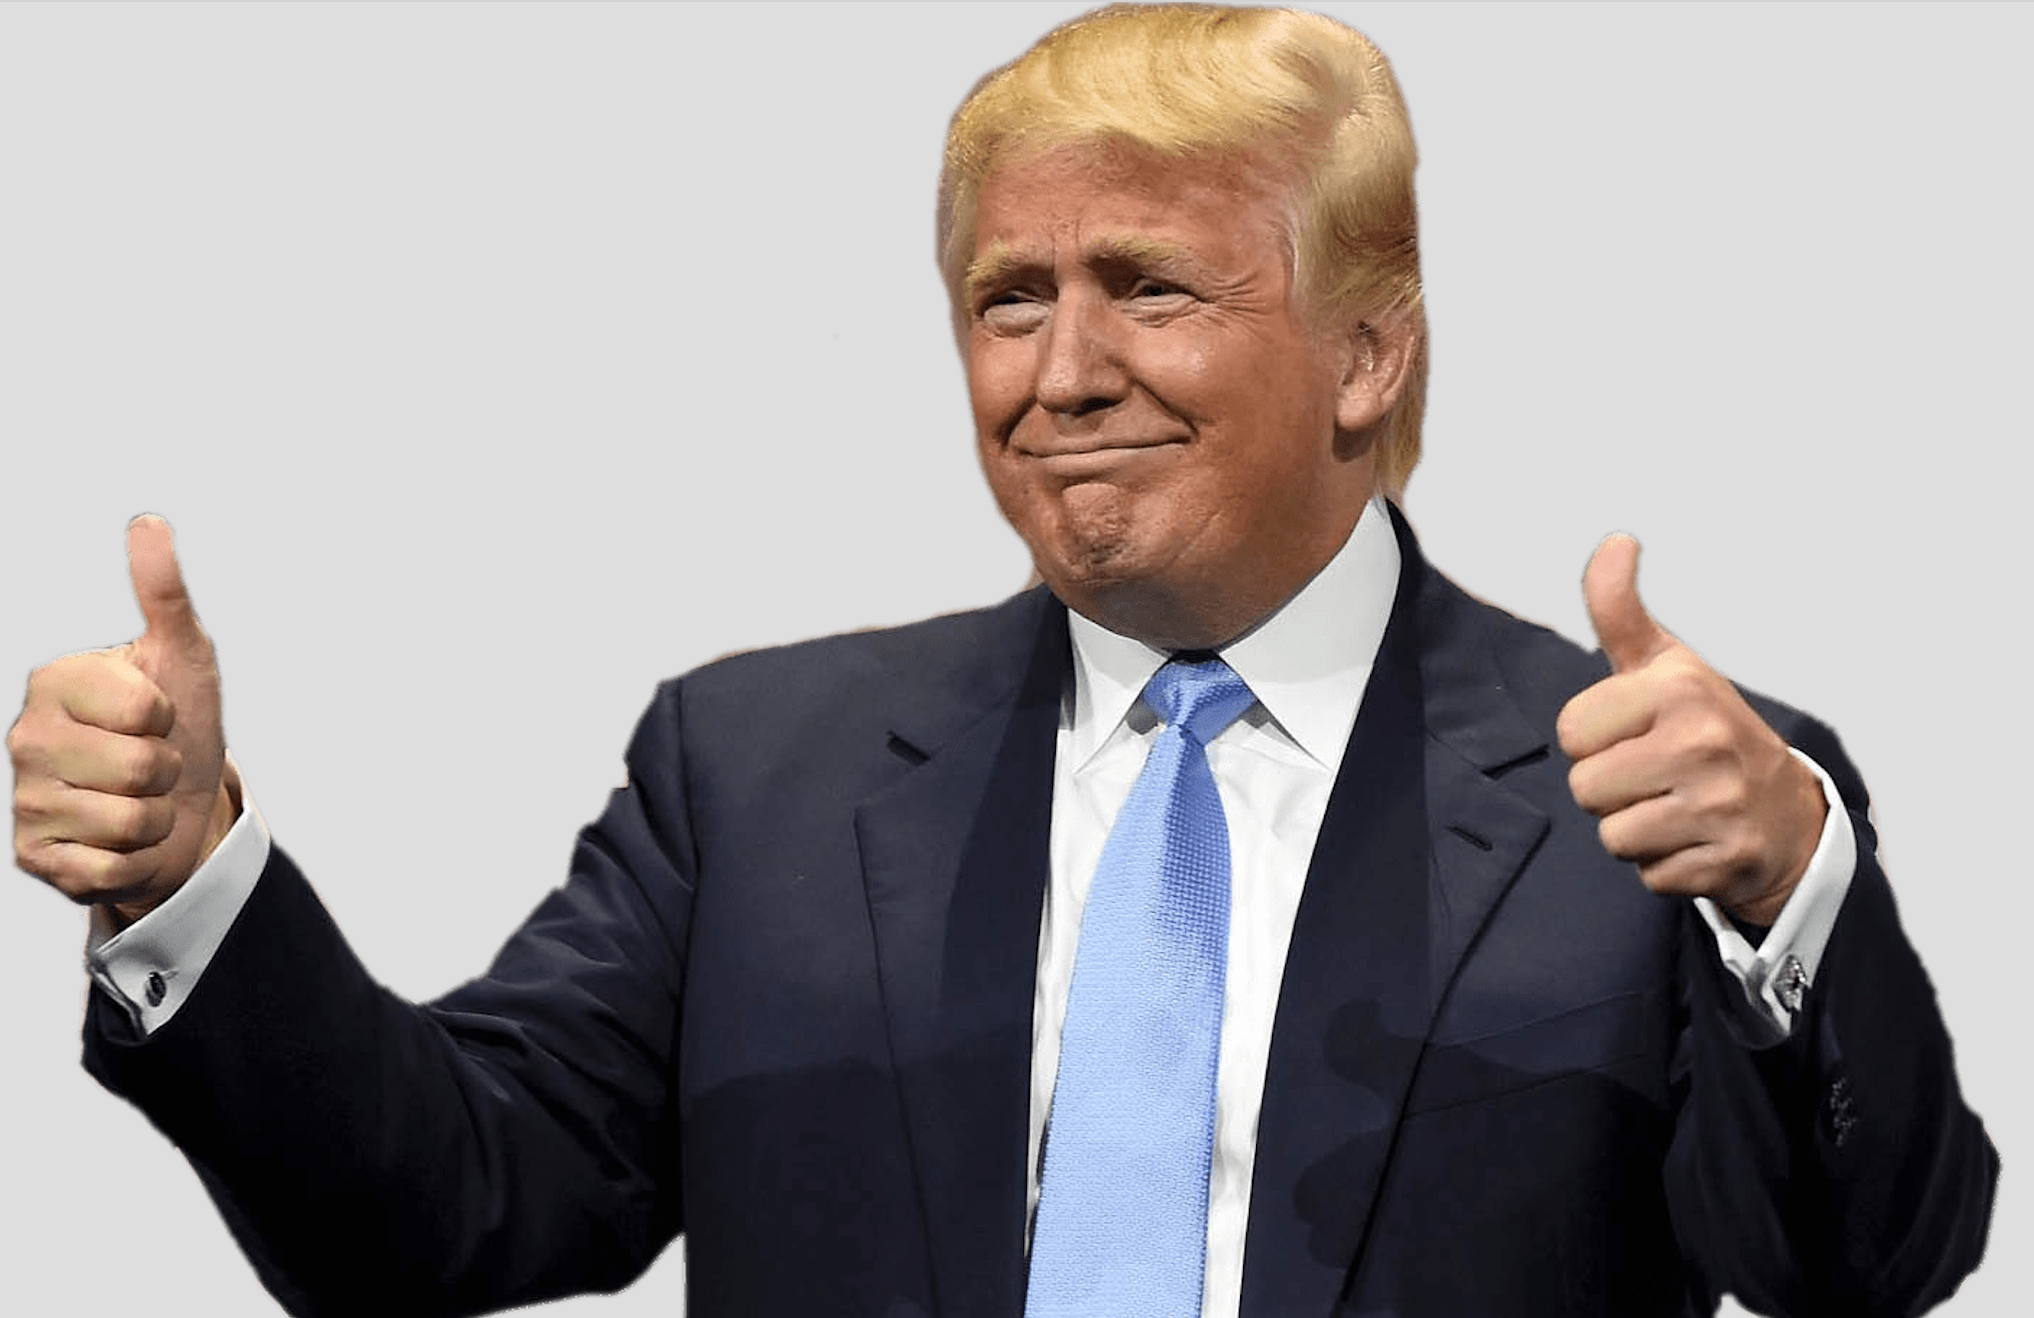 Trump Thumbs up